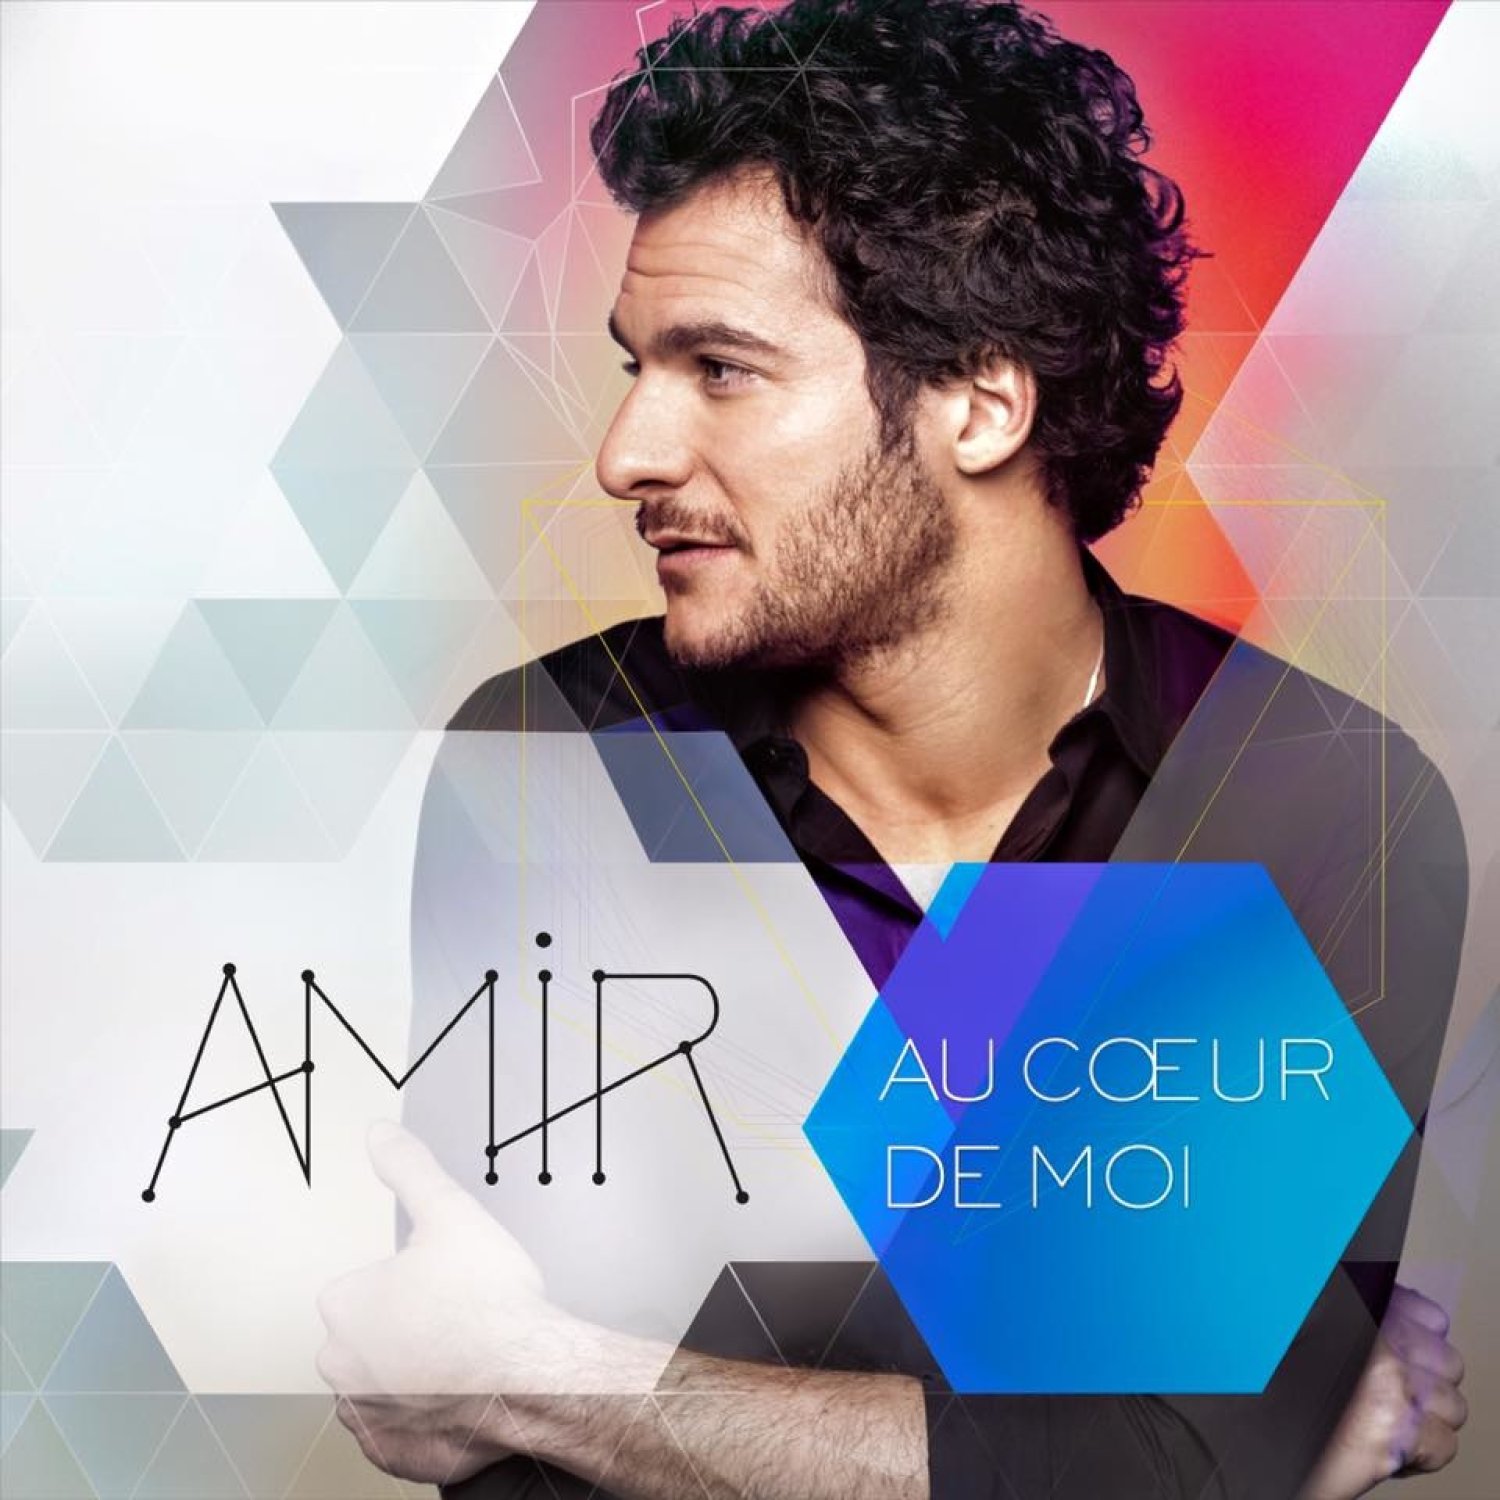 Au coeur de moi, le nouvel album d’Amir